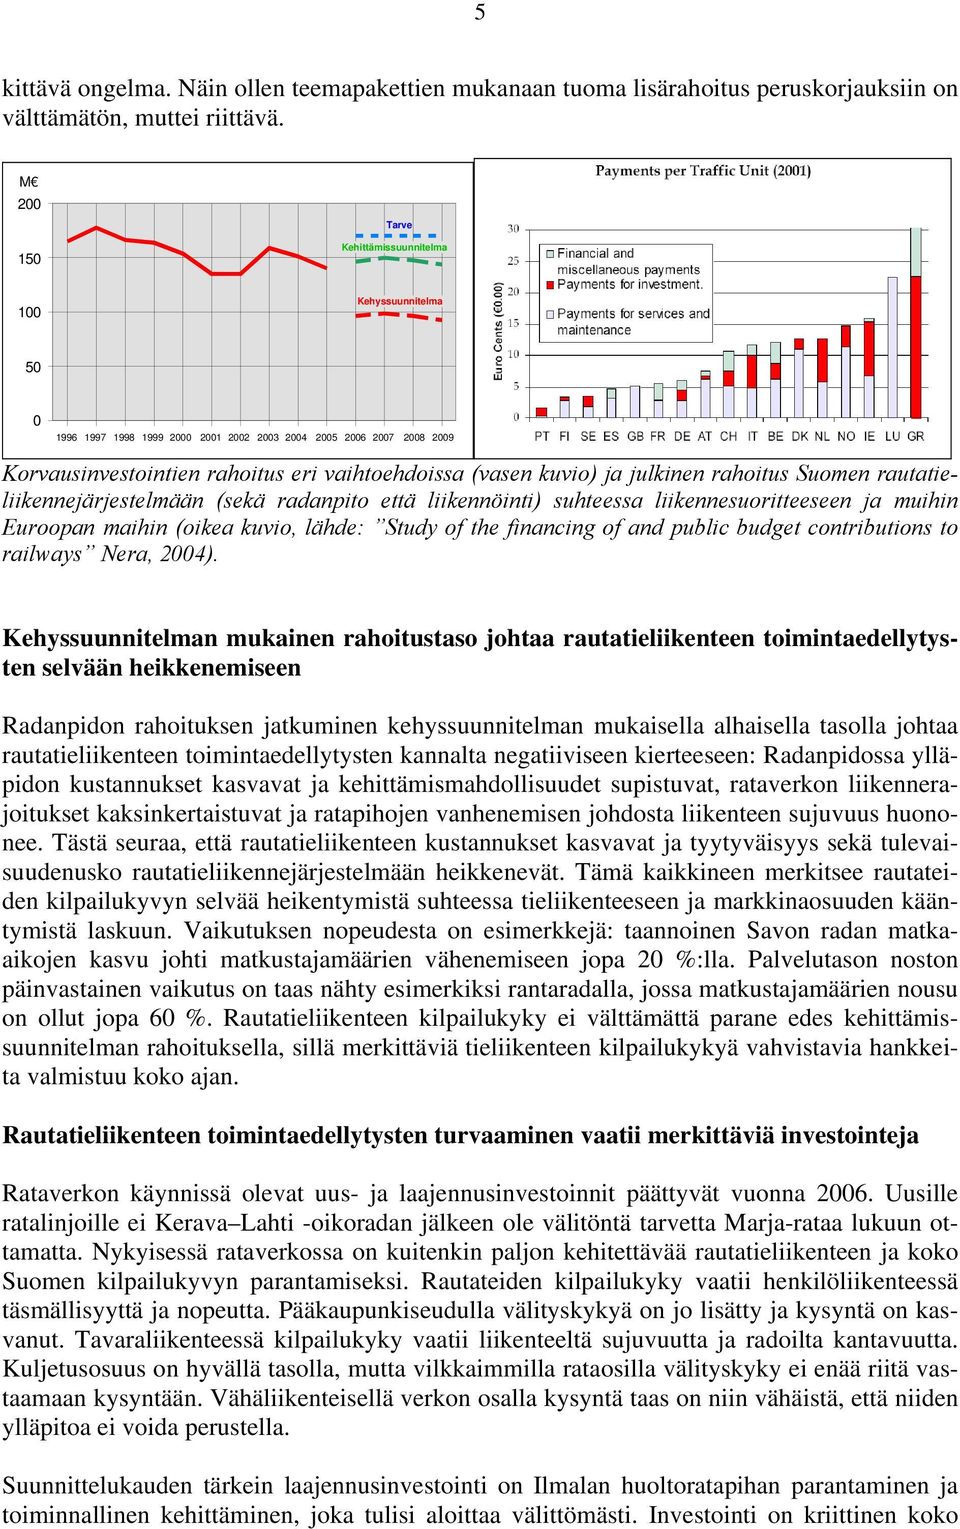 julkinen rahoitus Suomen rautatieliikennejärjestelmään (sekä radanpito että liikennöinti) suhteessa liikennesuoritteeseen ja muihin Euroopan maihin (oikea kuvio, lähde: Study of the financing of and